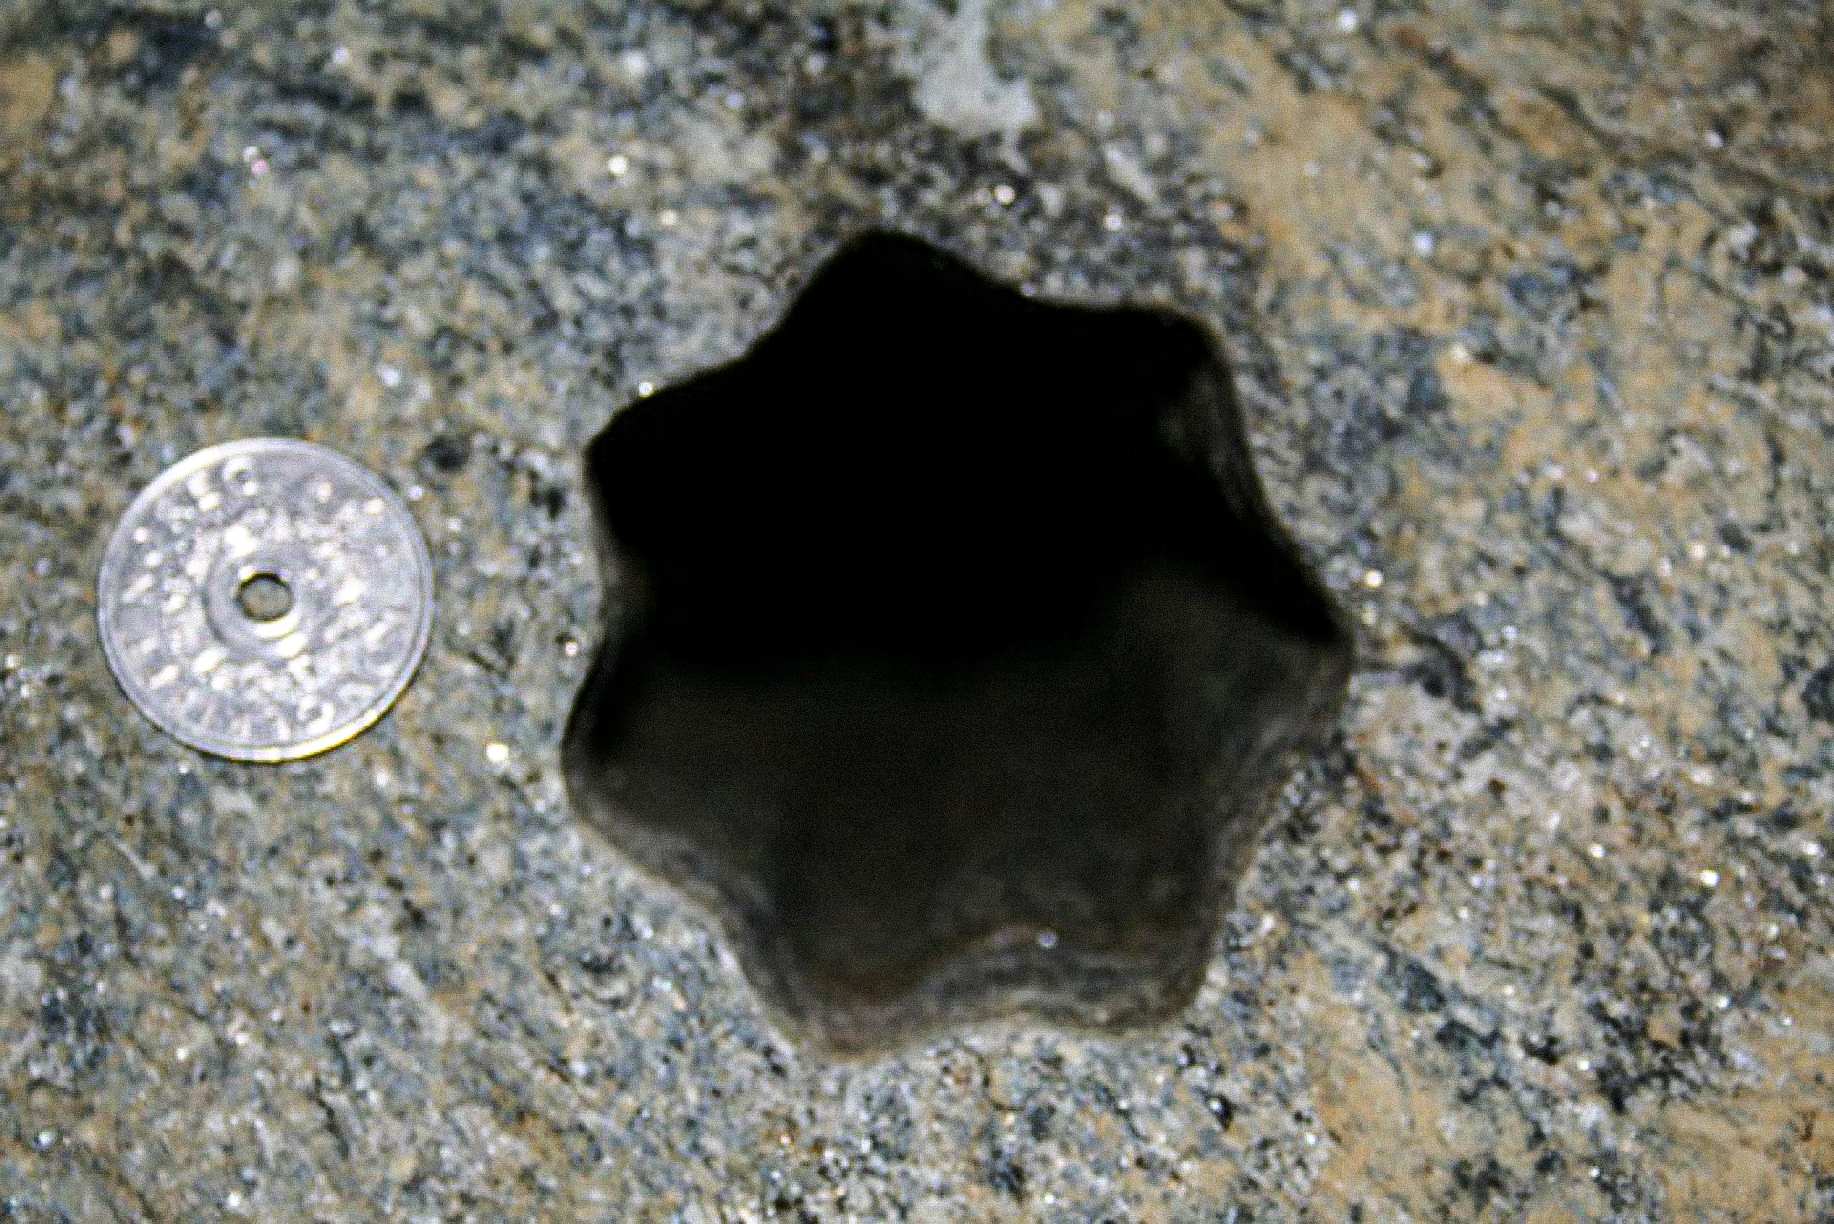 Dit stervormige gat (met zeven zijden) werd op vrijdag 30 november 2007 door aannemers gevonden in Volda, Noorwegen. De Noorse munt van 5 kronen heeft een diameter van 25 mm. Het gat is ongeveer 65 - 70 mm in diameter.